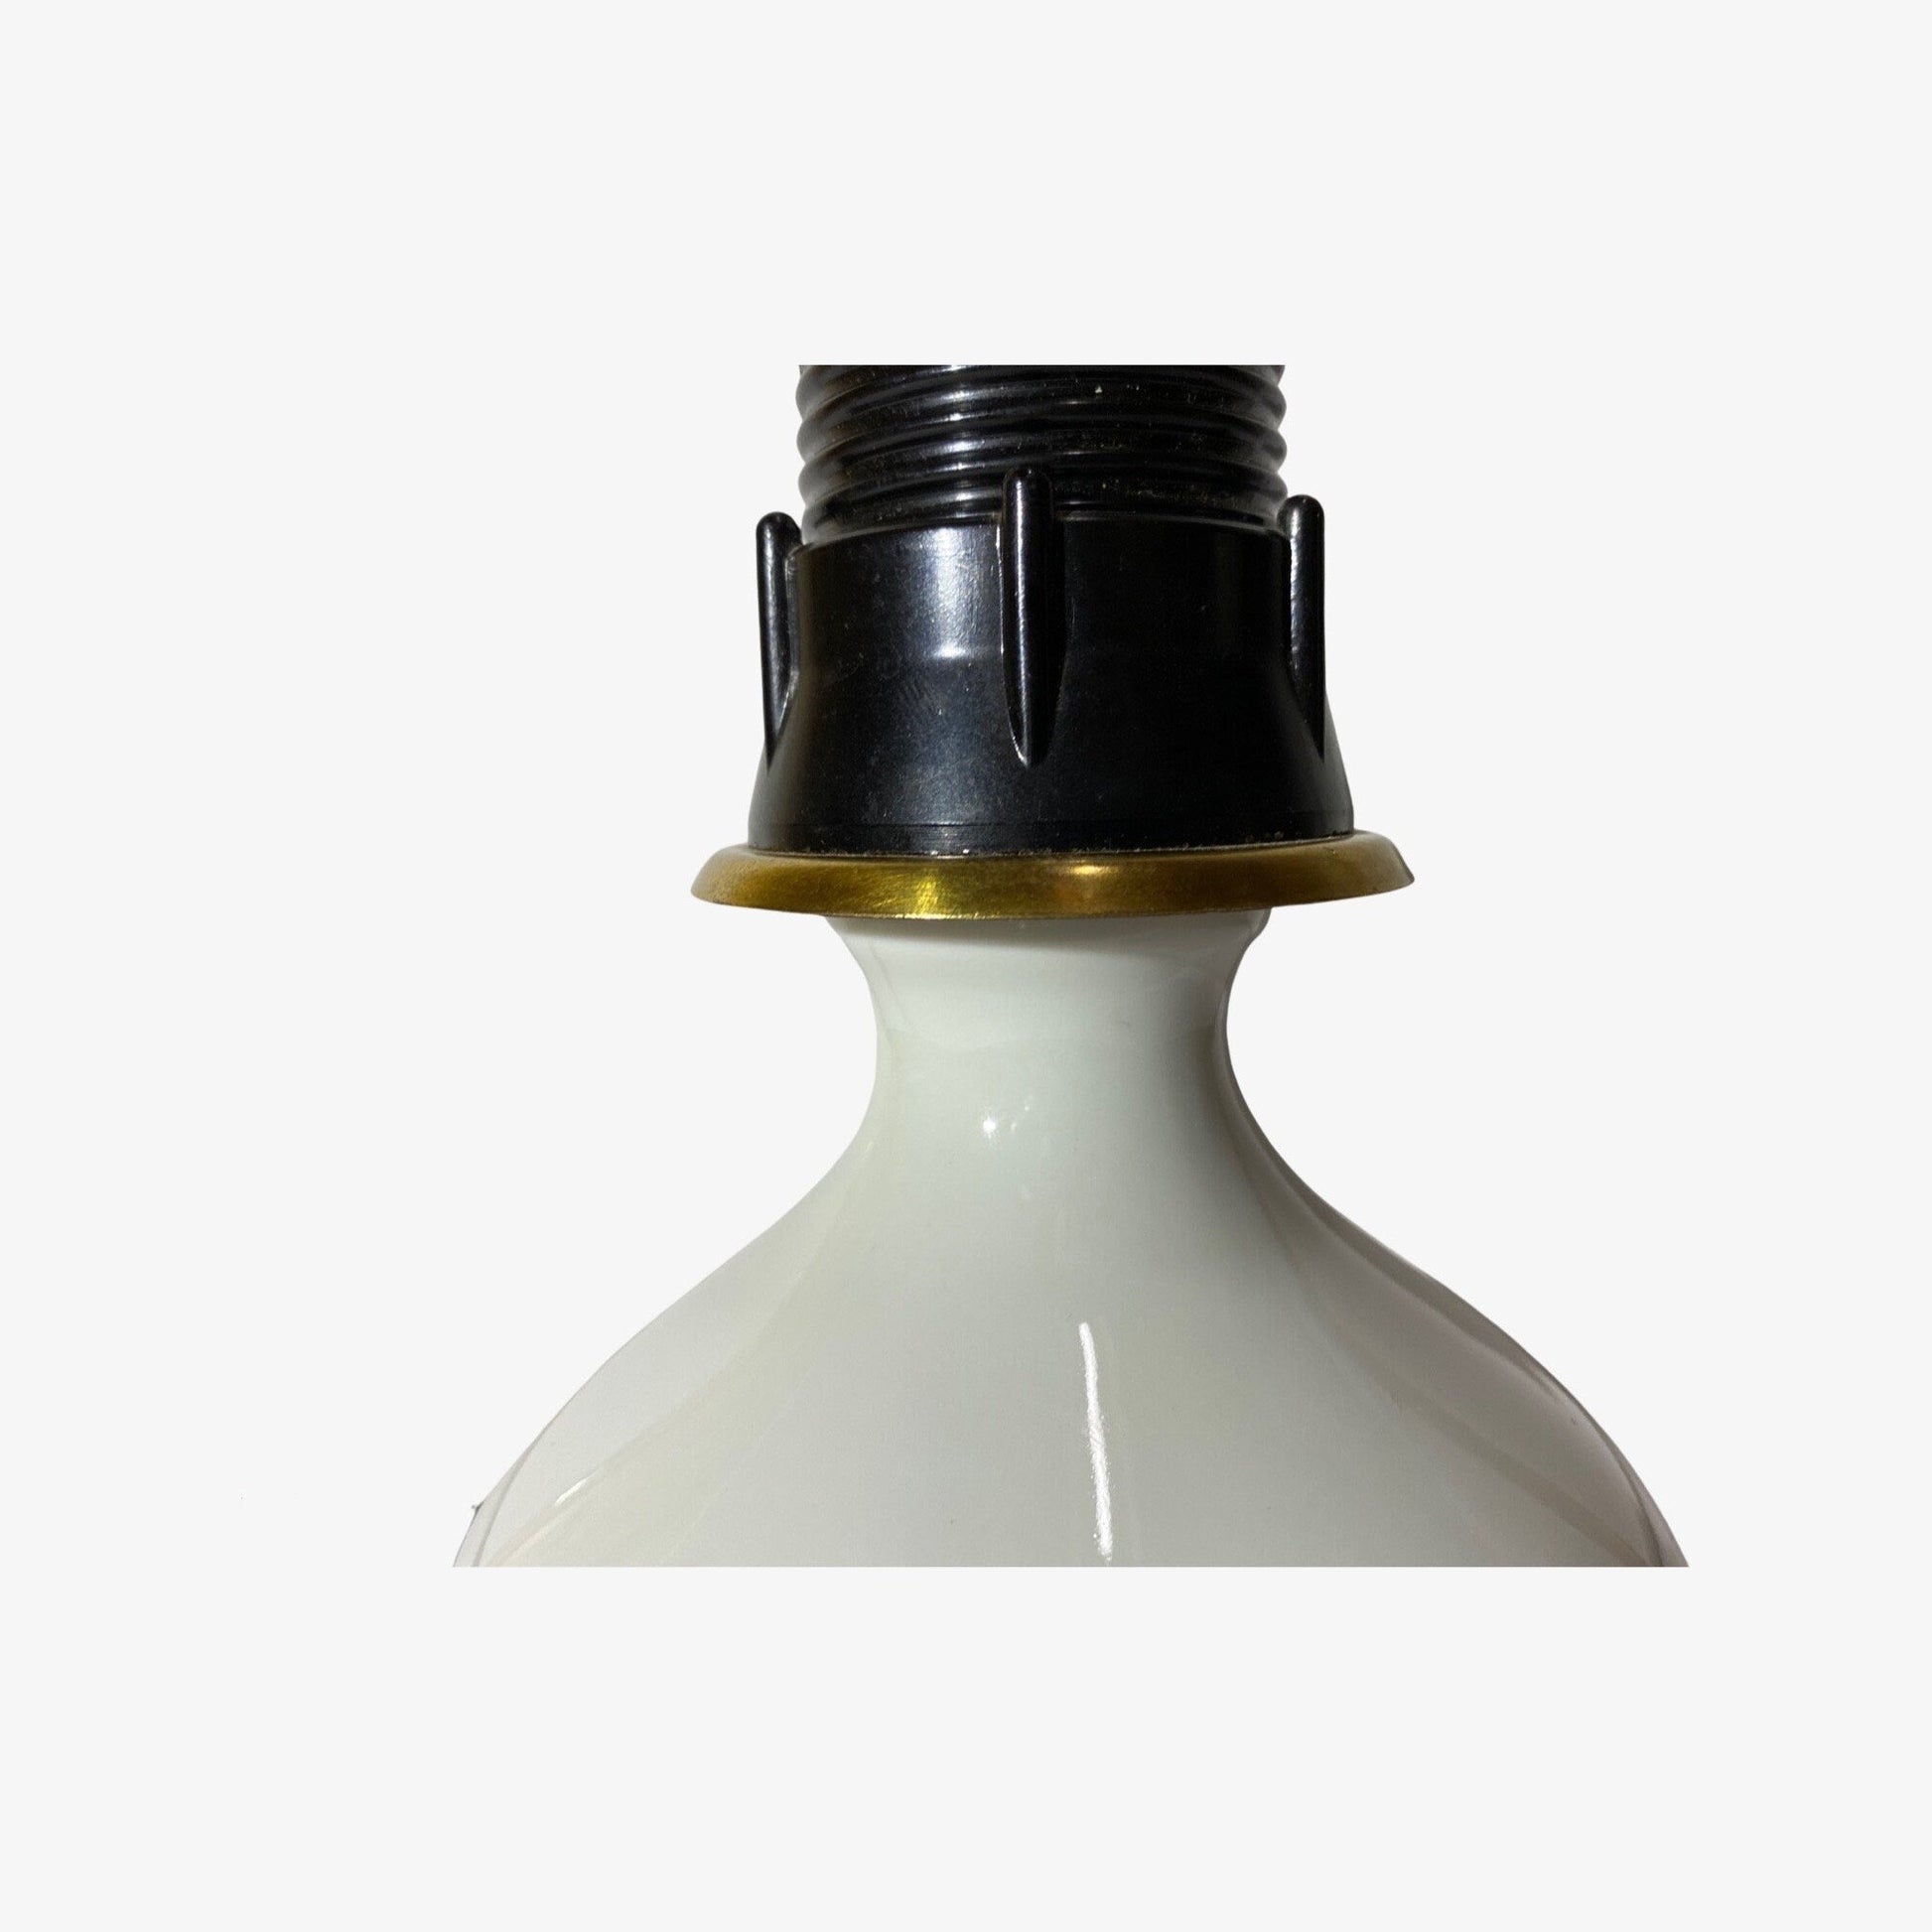 60s Handmade Ceramic Lamp From Denmark | White Ceramic Vintage Pottery - Mid Century Modern Lighting - VIntage Table Light - Retro Desk Lamp - FancyVintage.nl -